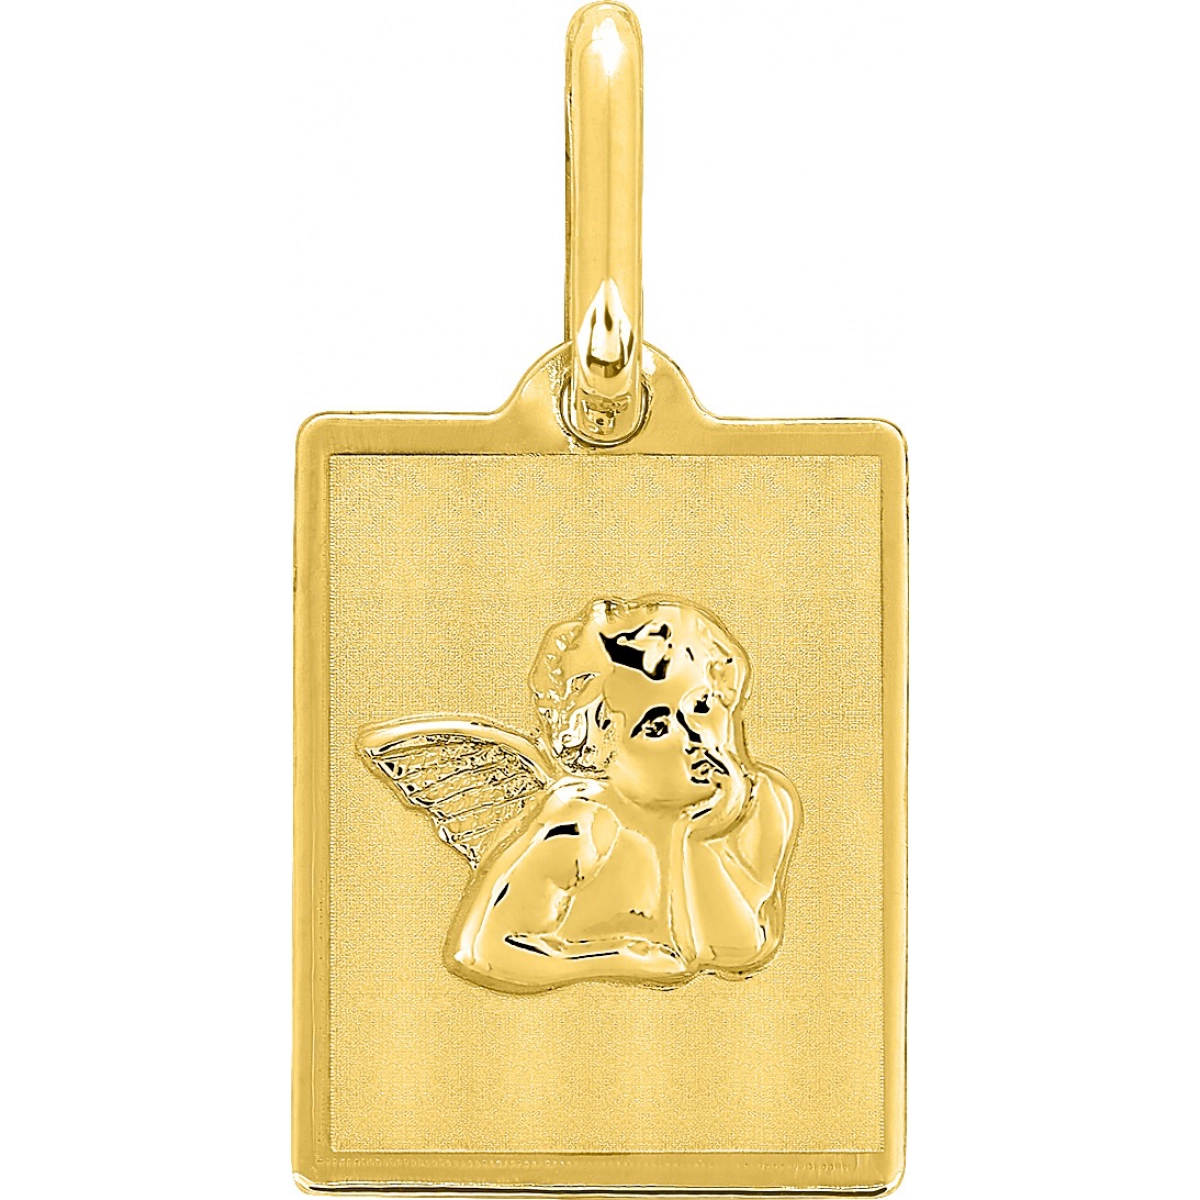 Medalla ange oro amarillo 9kt Lua Blanca 0M54342.0